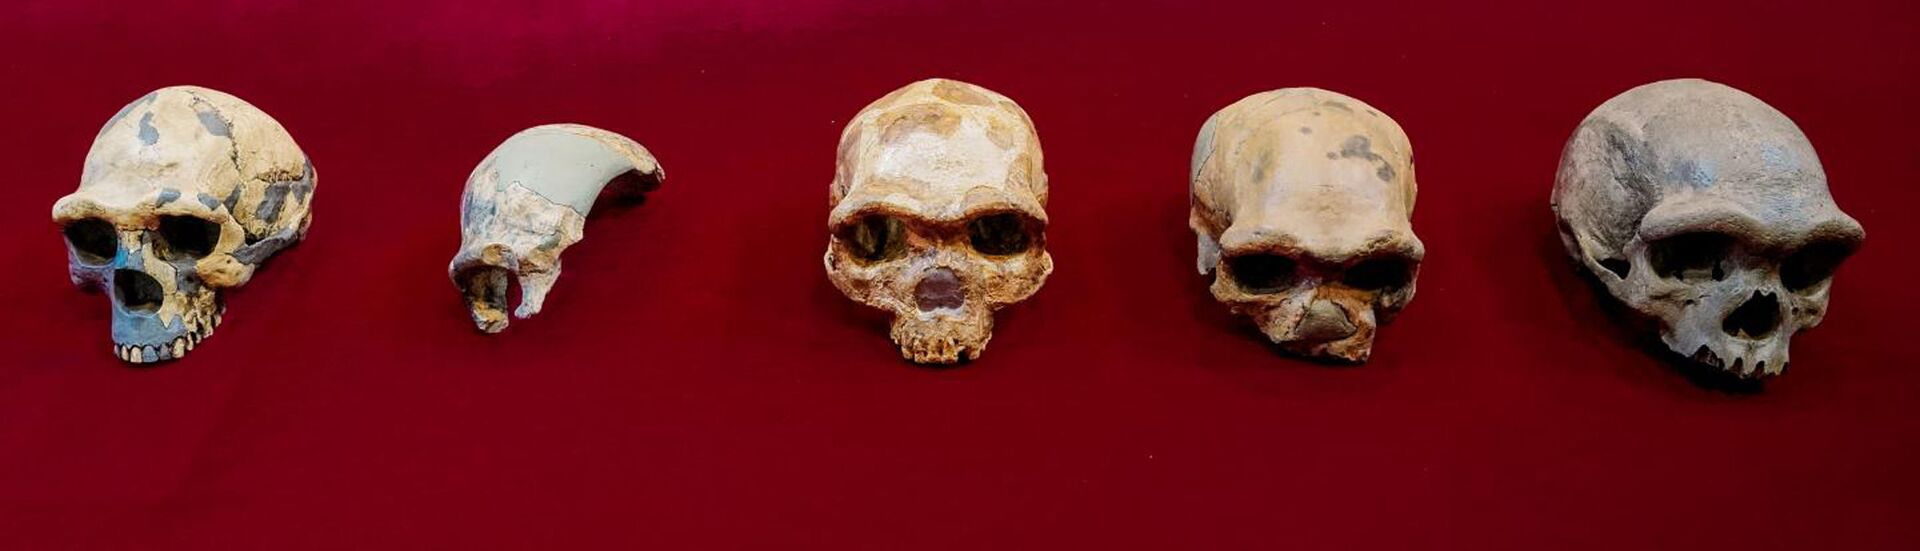 'Homem Dragão' pode ser nosso parente mais próximo e não neandertais, dizem cientistas (FOTOS) - Sputnik Brasil, 1920, 25.06.2021